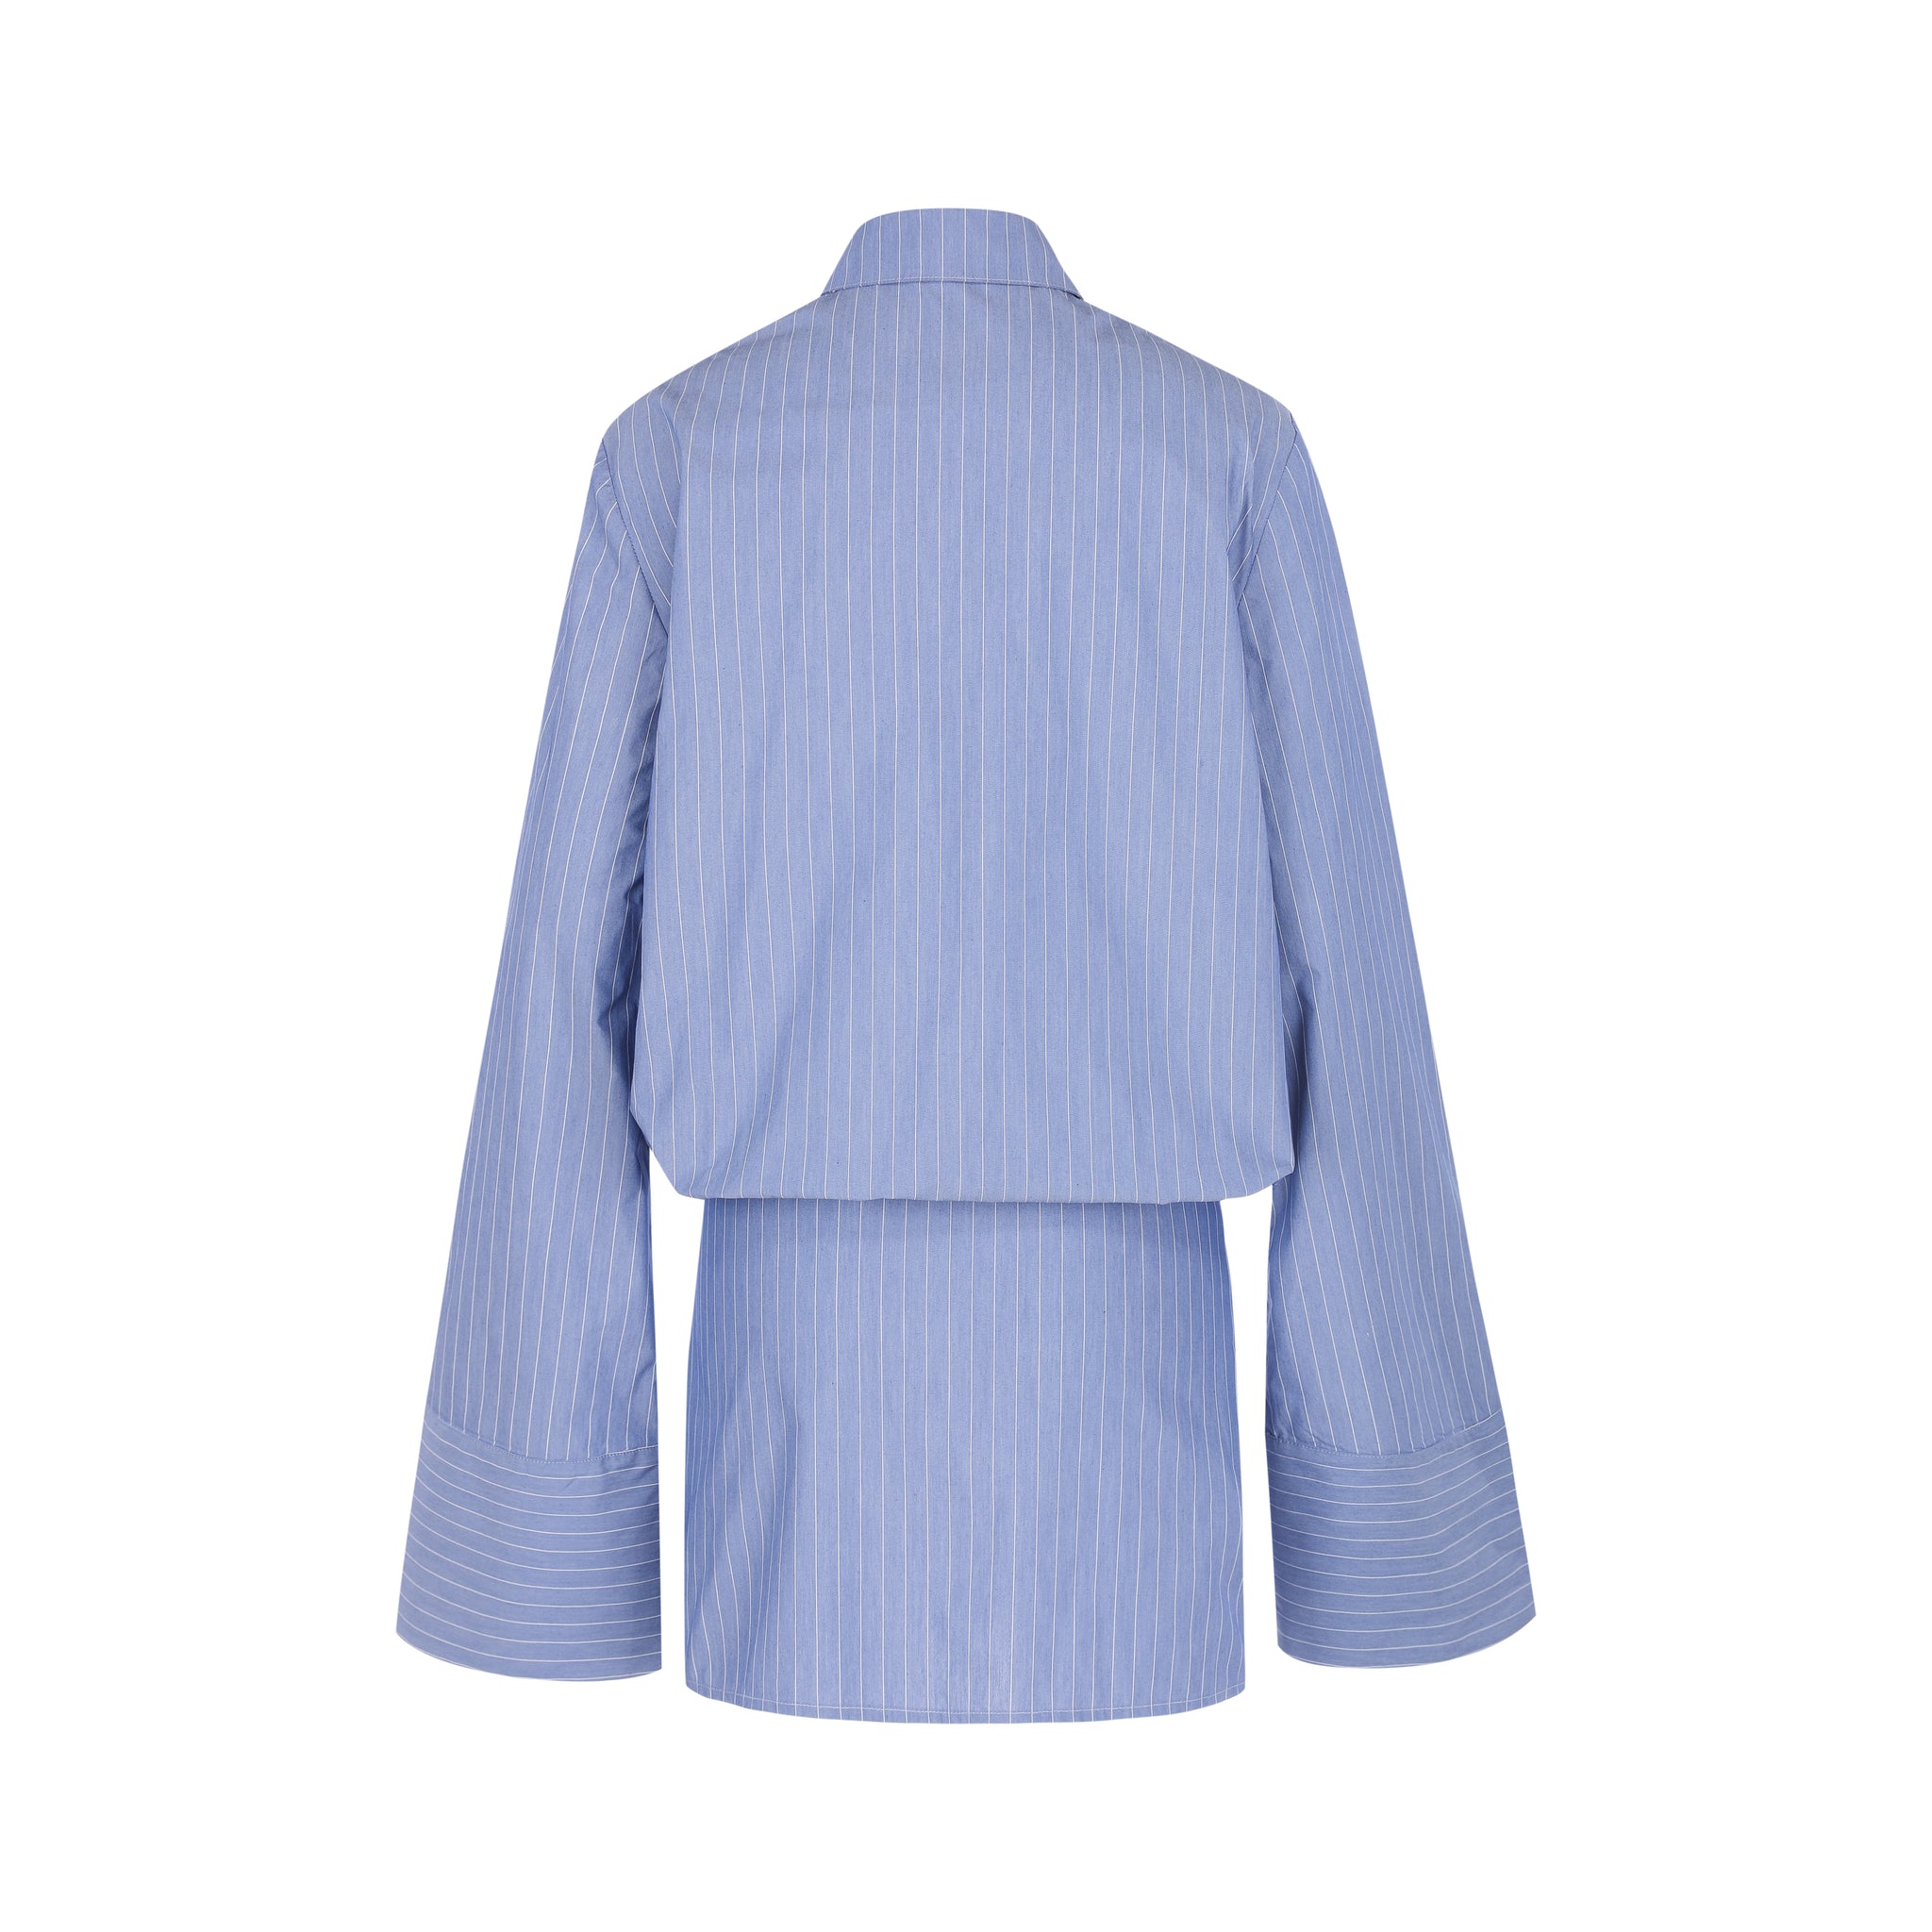 Yasmin Shirt Dress - Light Blue Pinstripe